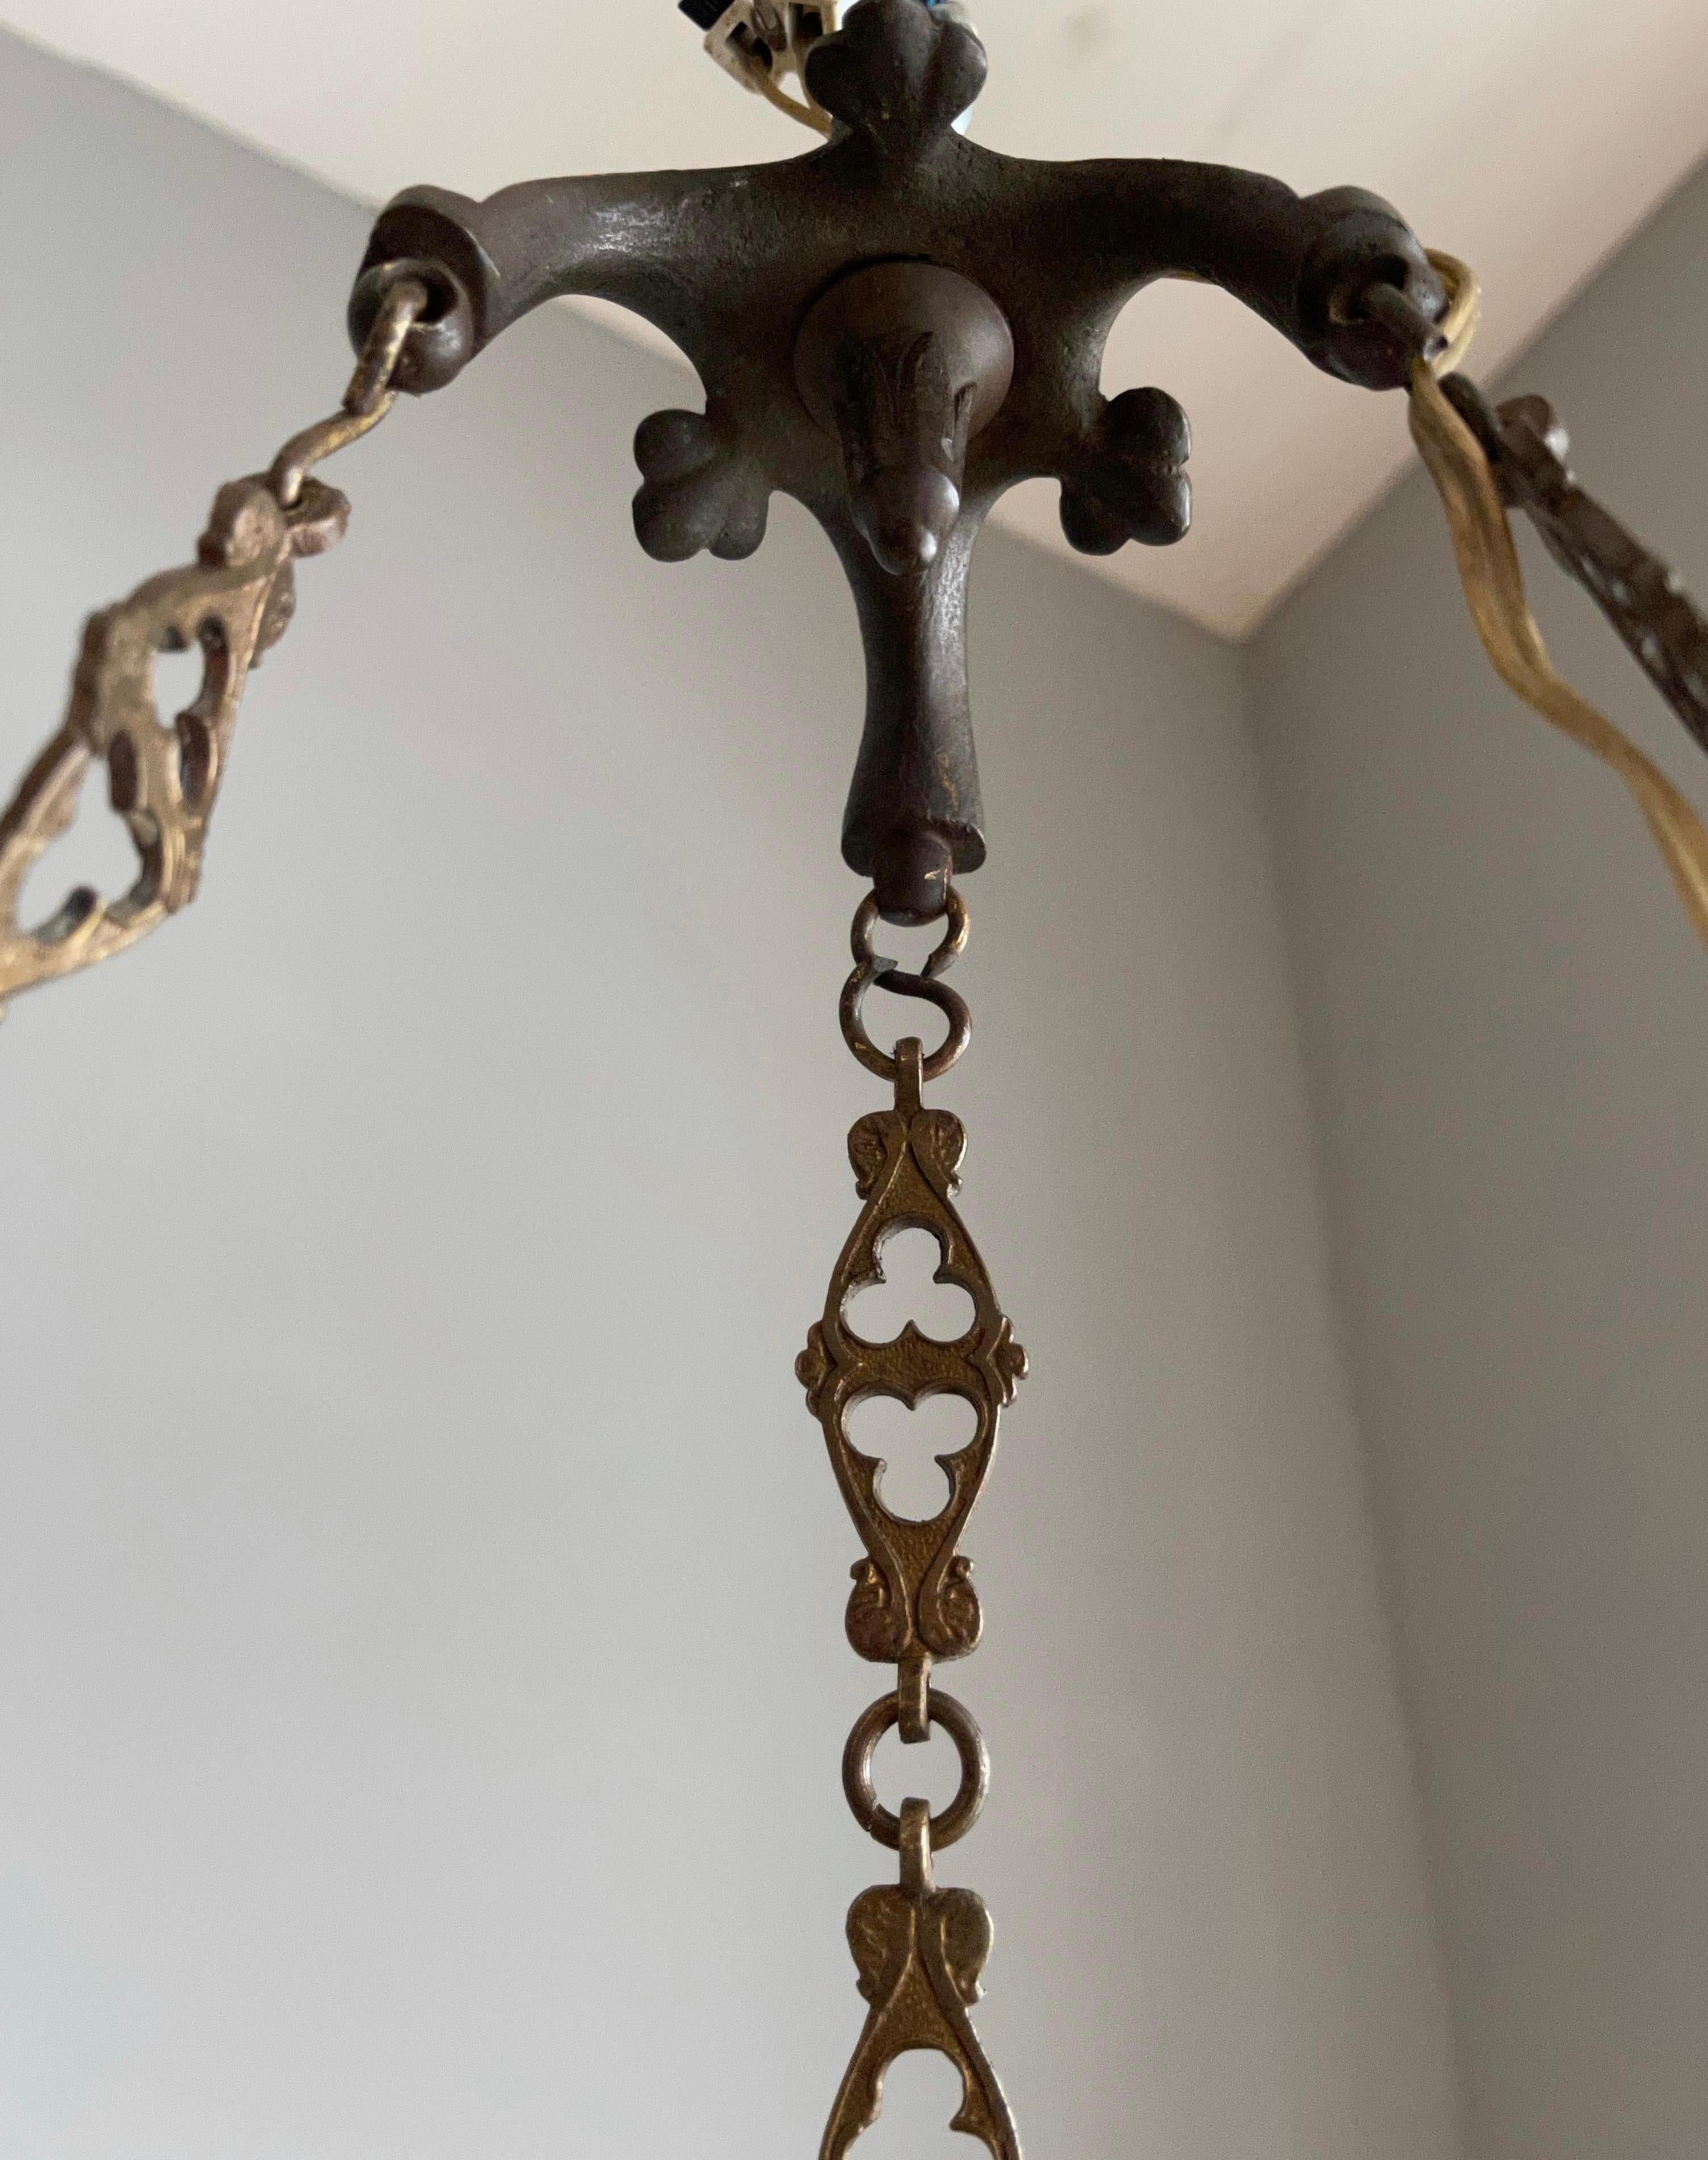 Antique Bronze Gothic Sanctuary Lamp / Church Pendant with Gargoyle Sculptures For Sale 10